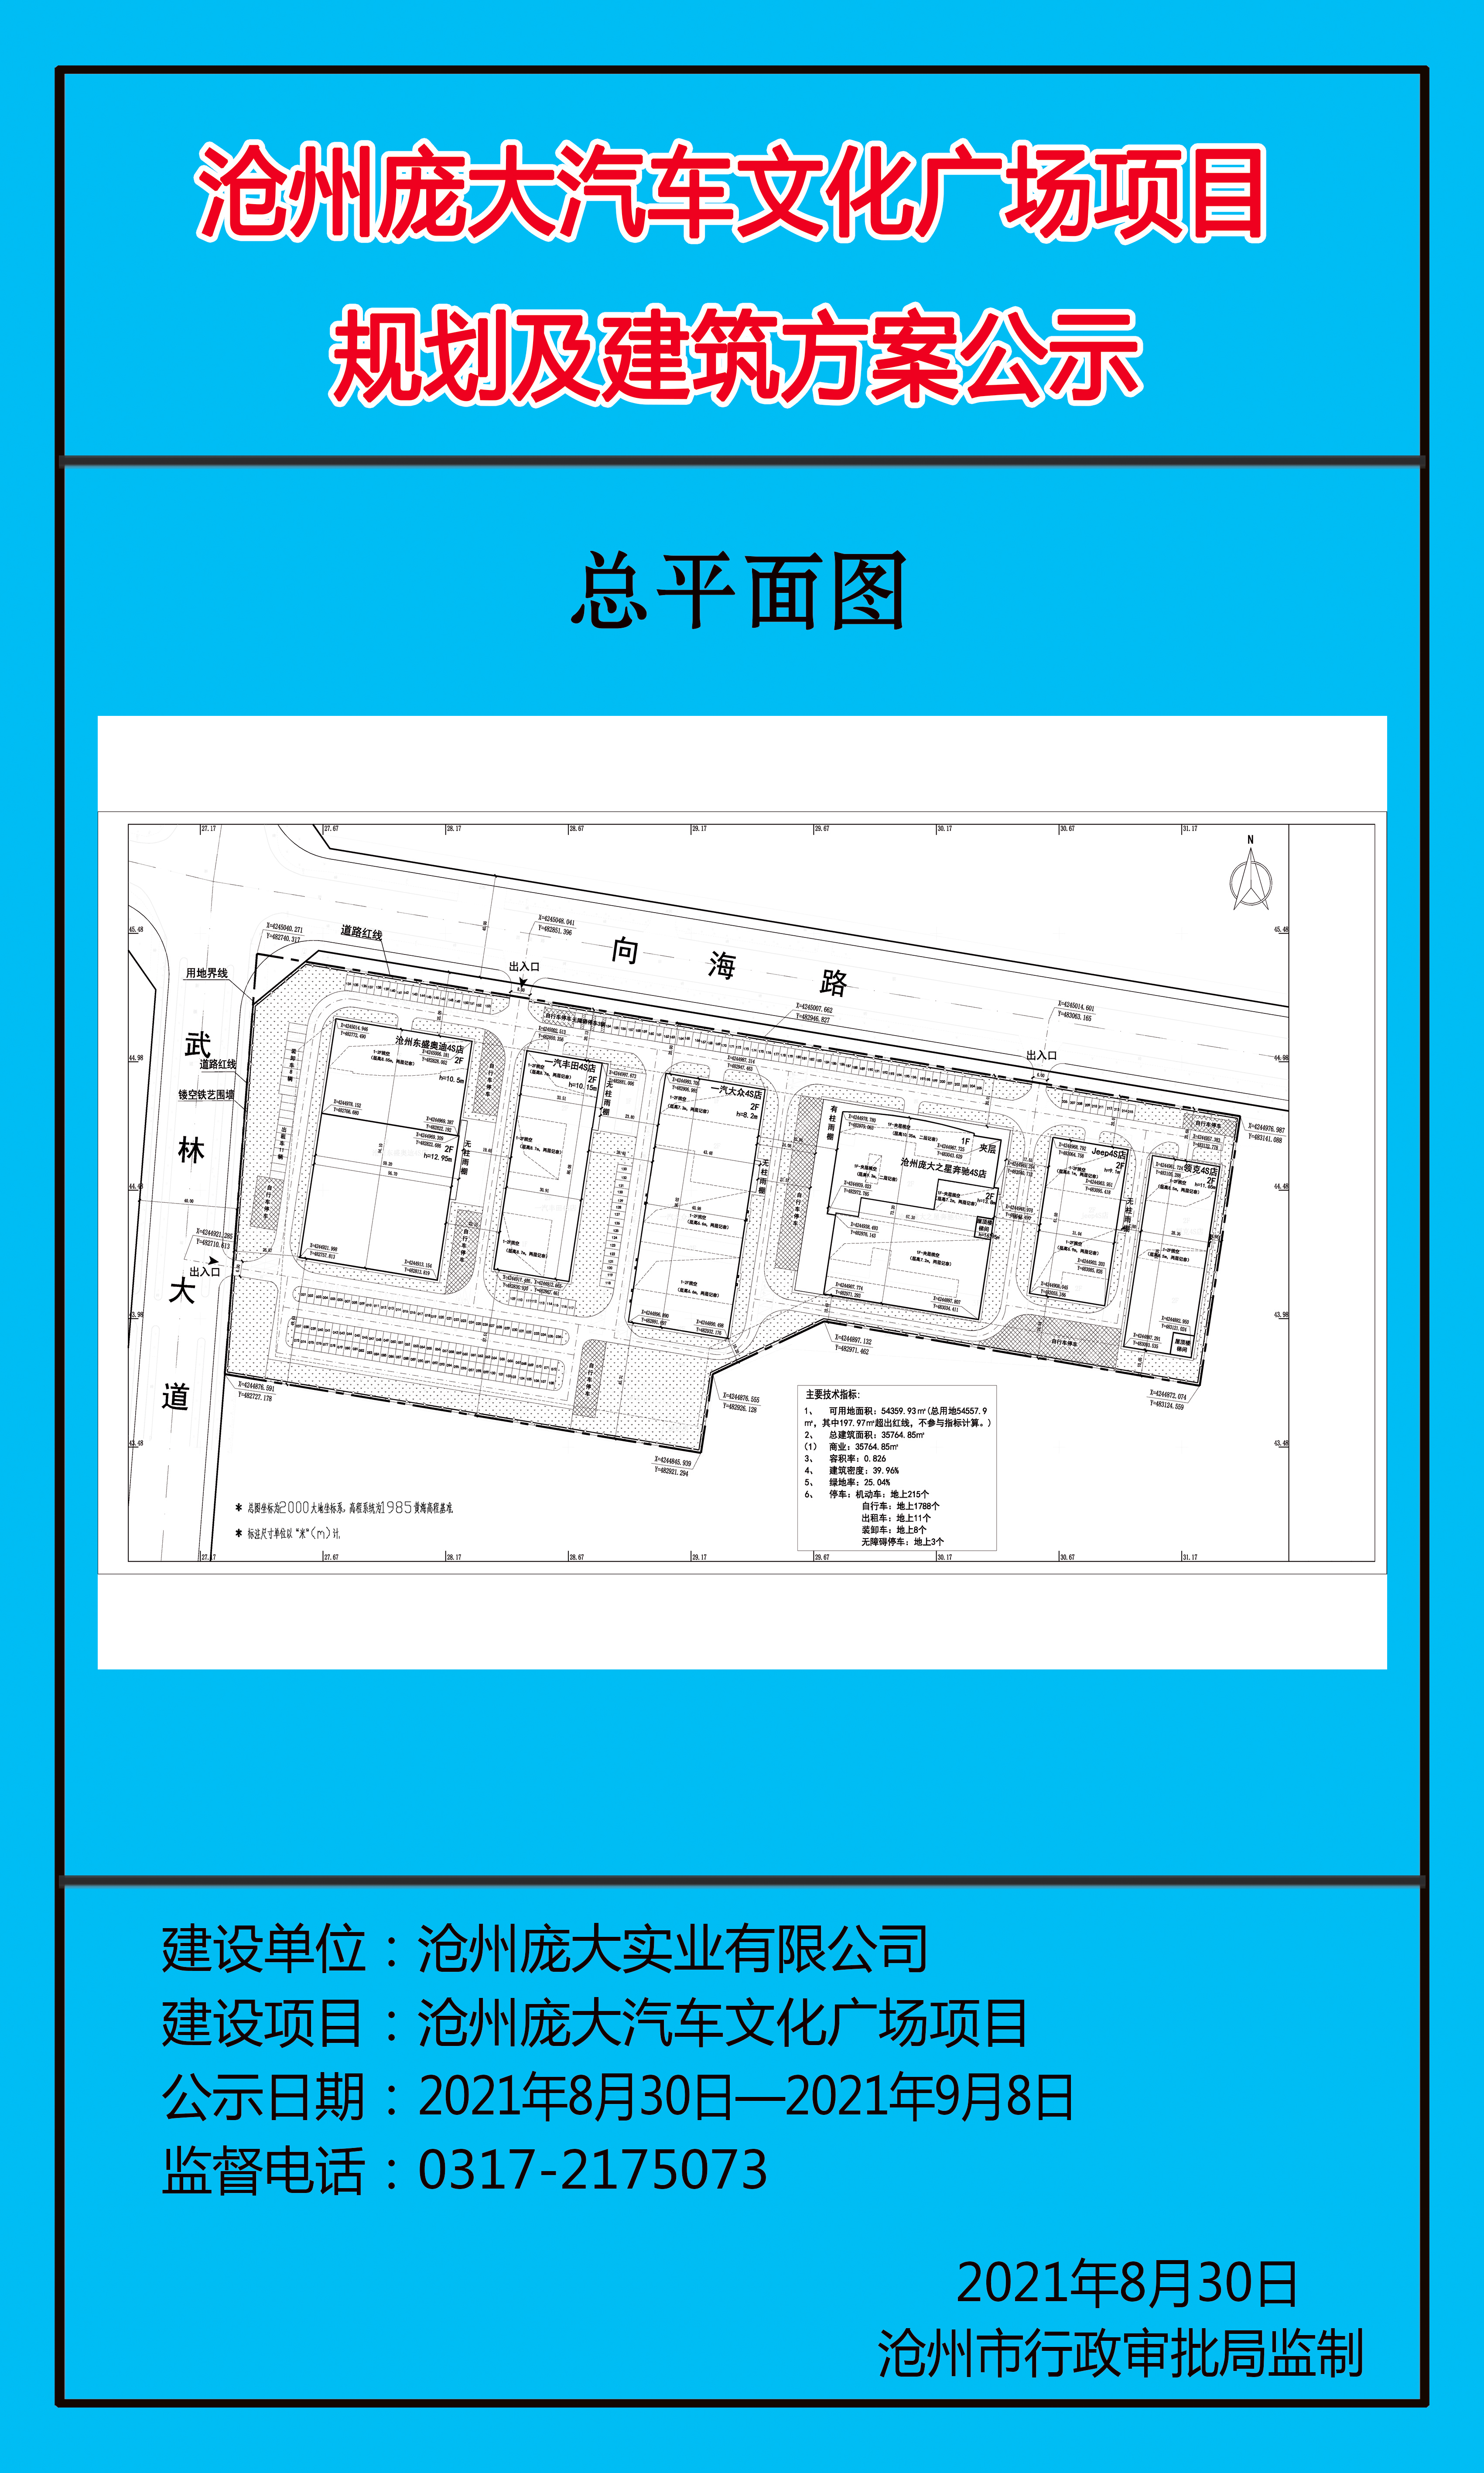 沧州市行政审批局：关于沧州庞大汽车文化广场项目的批前公示